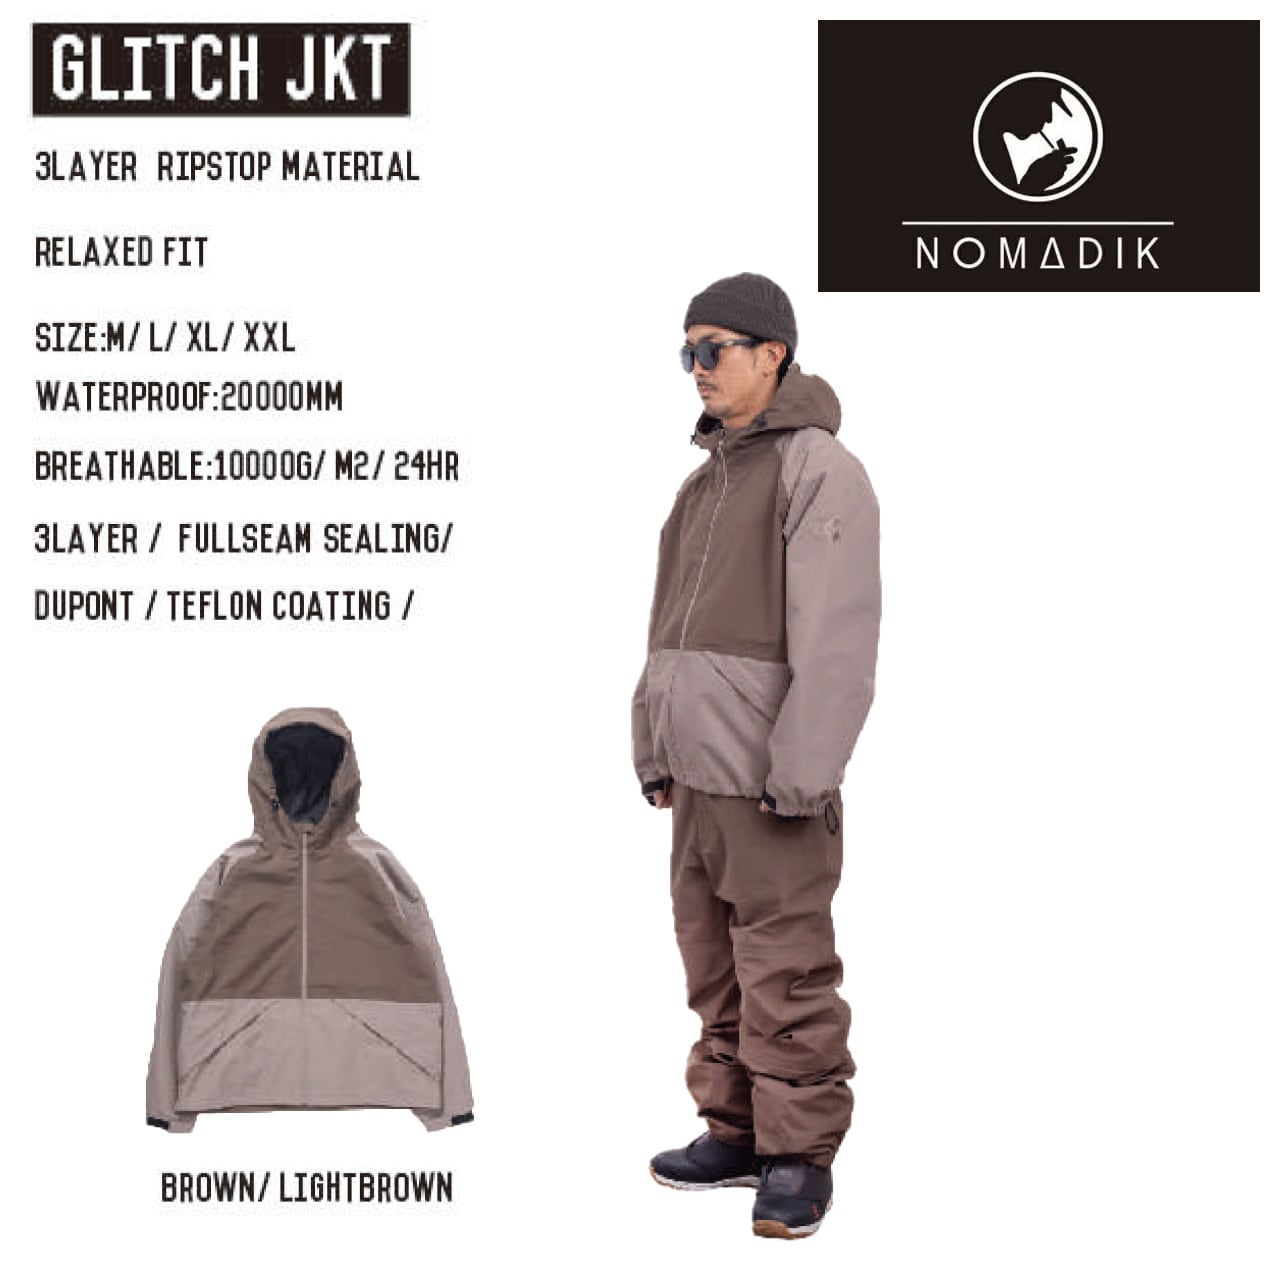 23-24 NOMADIK GLITCH JKT 予約モデル スノーボード ウェア